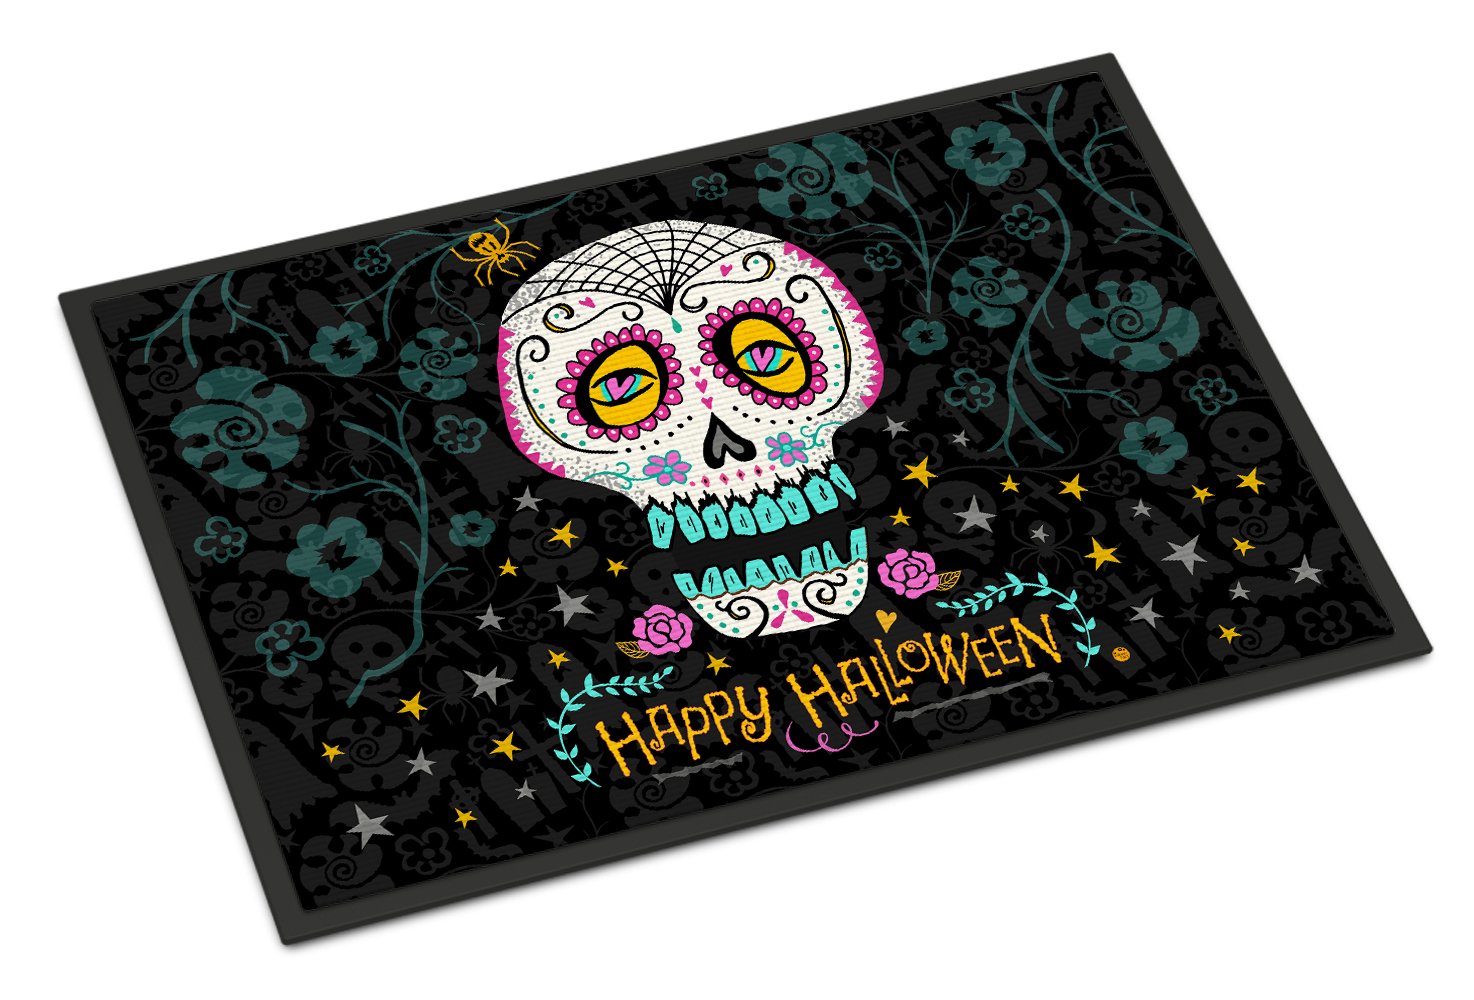 Happy Halloween Day of the Dead Indoor or Outdoor Mat 24x36 VHA3035JMAT by Caroline's Treasures